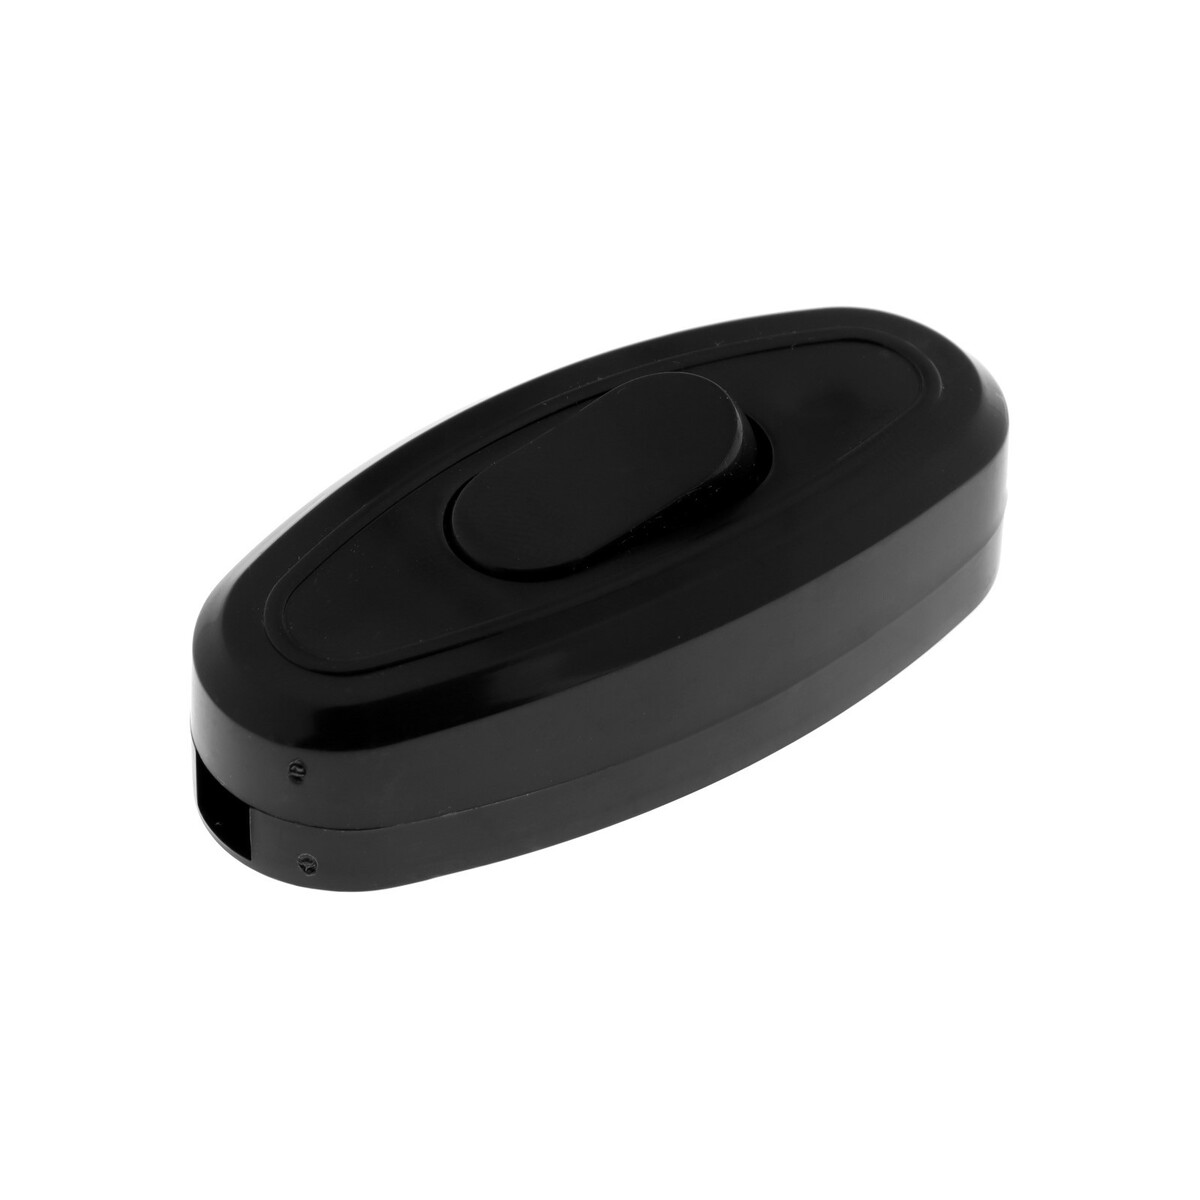 Выключатель на шнур 6 а, 250 в, черный выключатель скрытой установки одноклавишный 10 а абс пластик подсветка ip20 белый universal севиль с0121